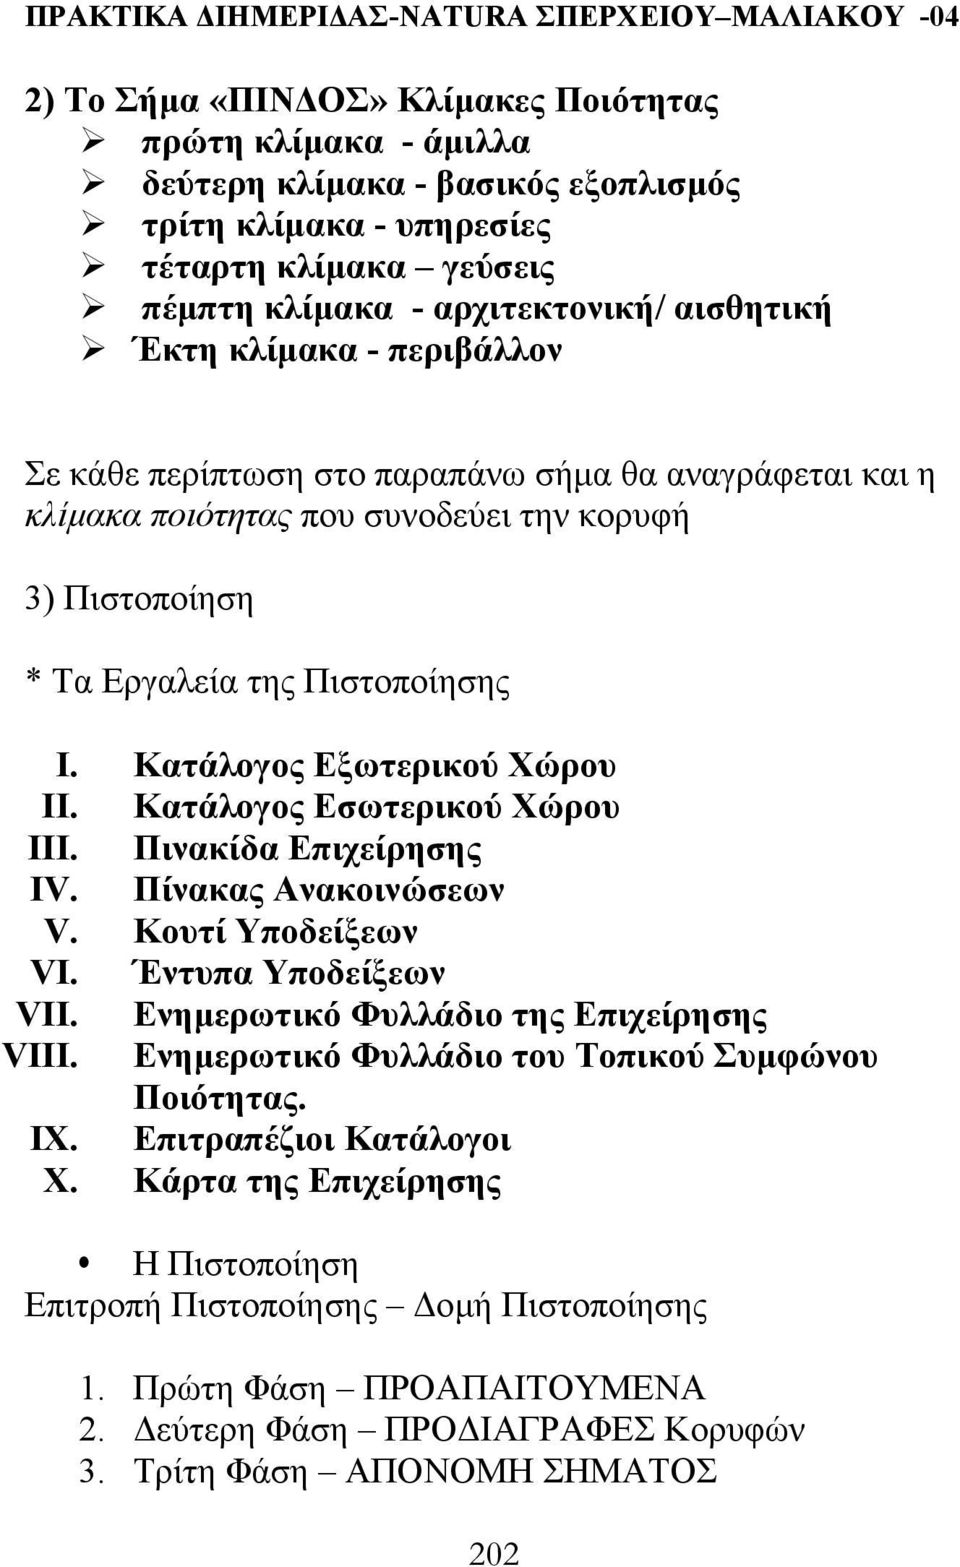 Κατάλογος Εσωτερικού Χώρου III. Πινακίδα Επιχείρησης IV. Πίνακας Ανακοινώσεων V. Κουτί Υποδείξεων VI. Έντυπα Υποδείξεων VII. Ενηµερωτικό Φυλλάδιο της Επιχείρησης VIII.